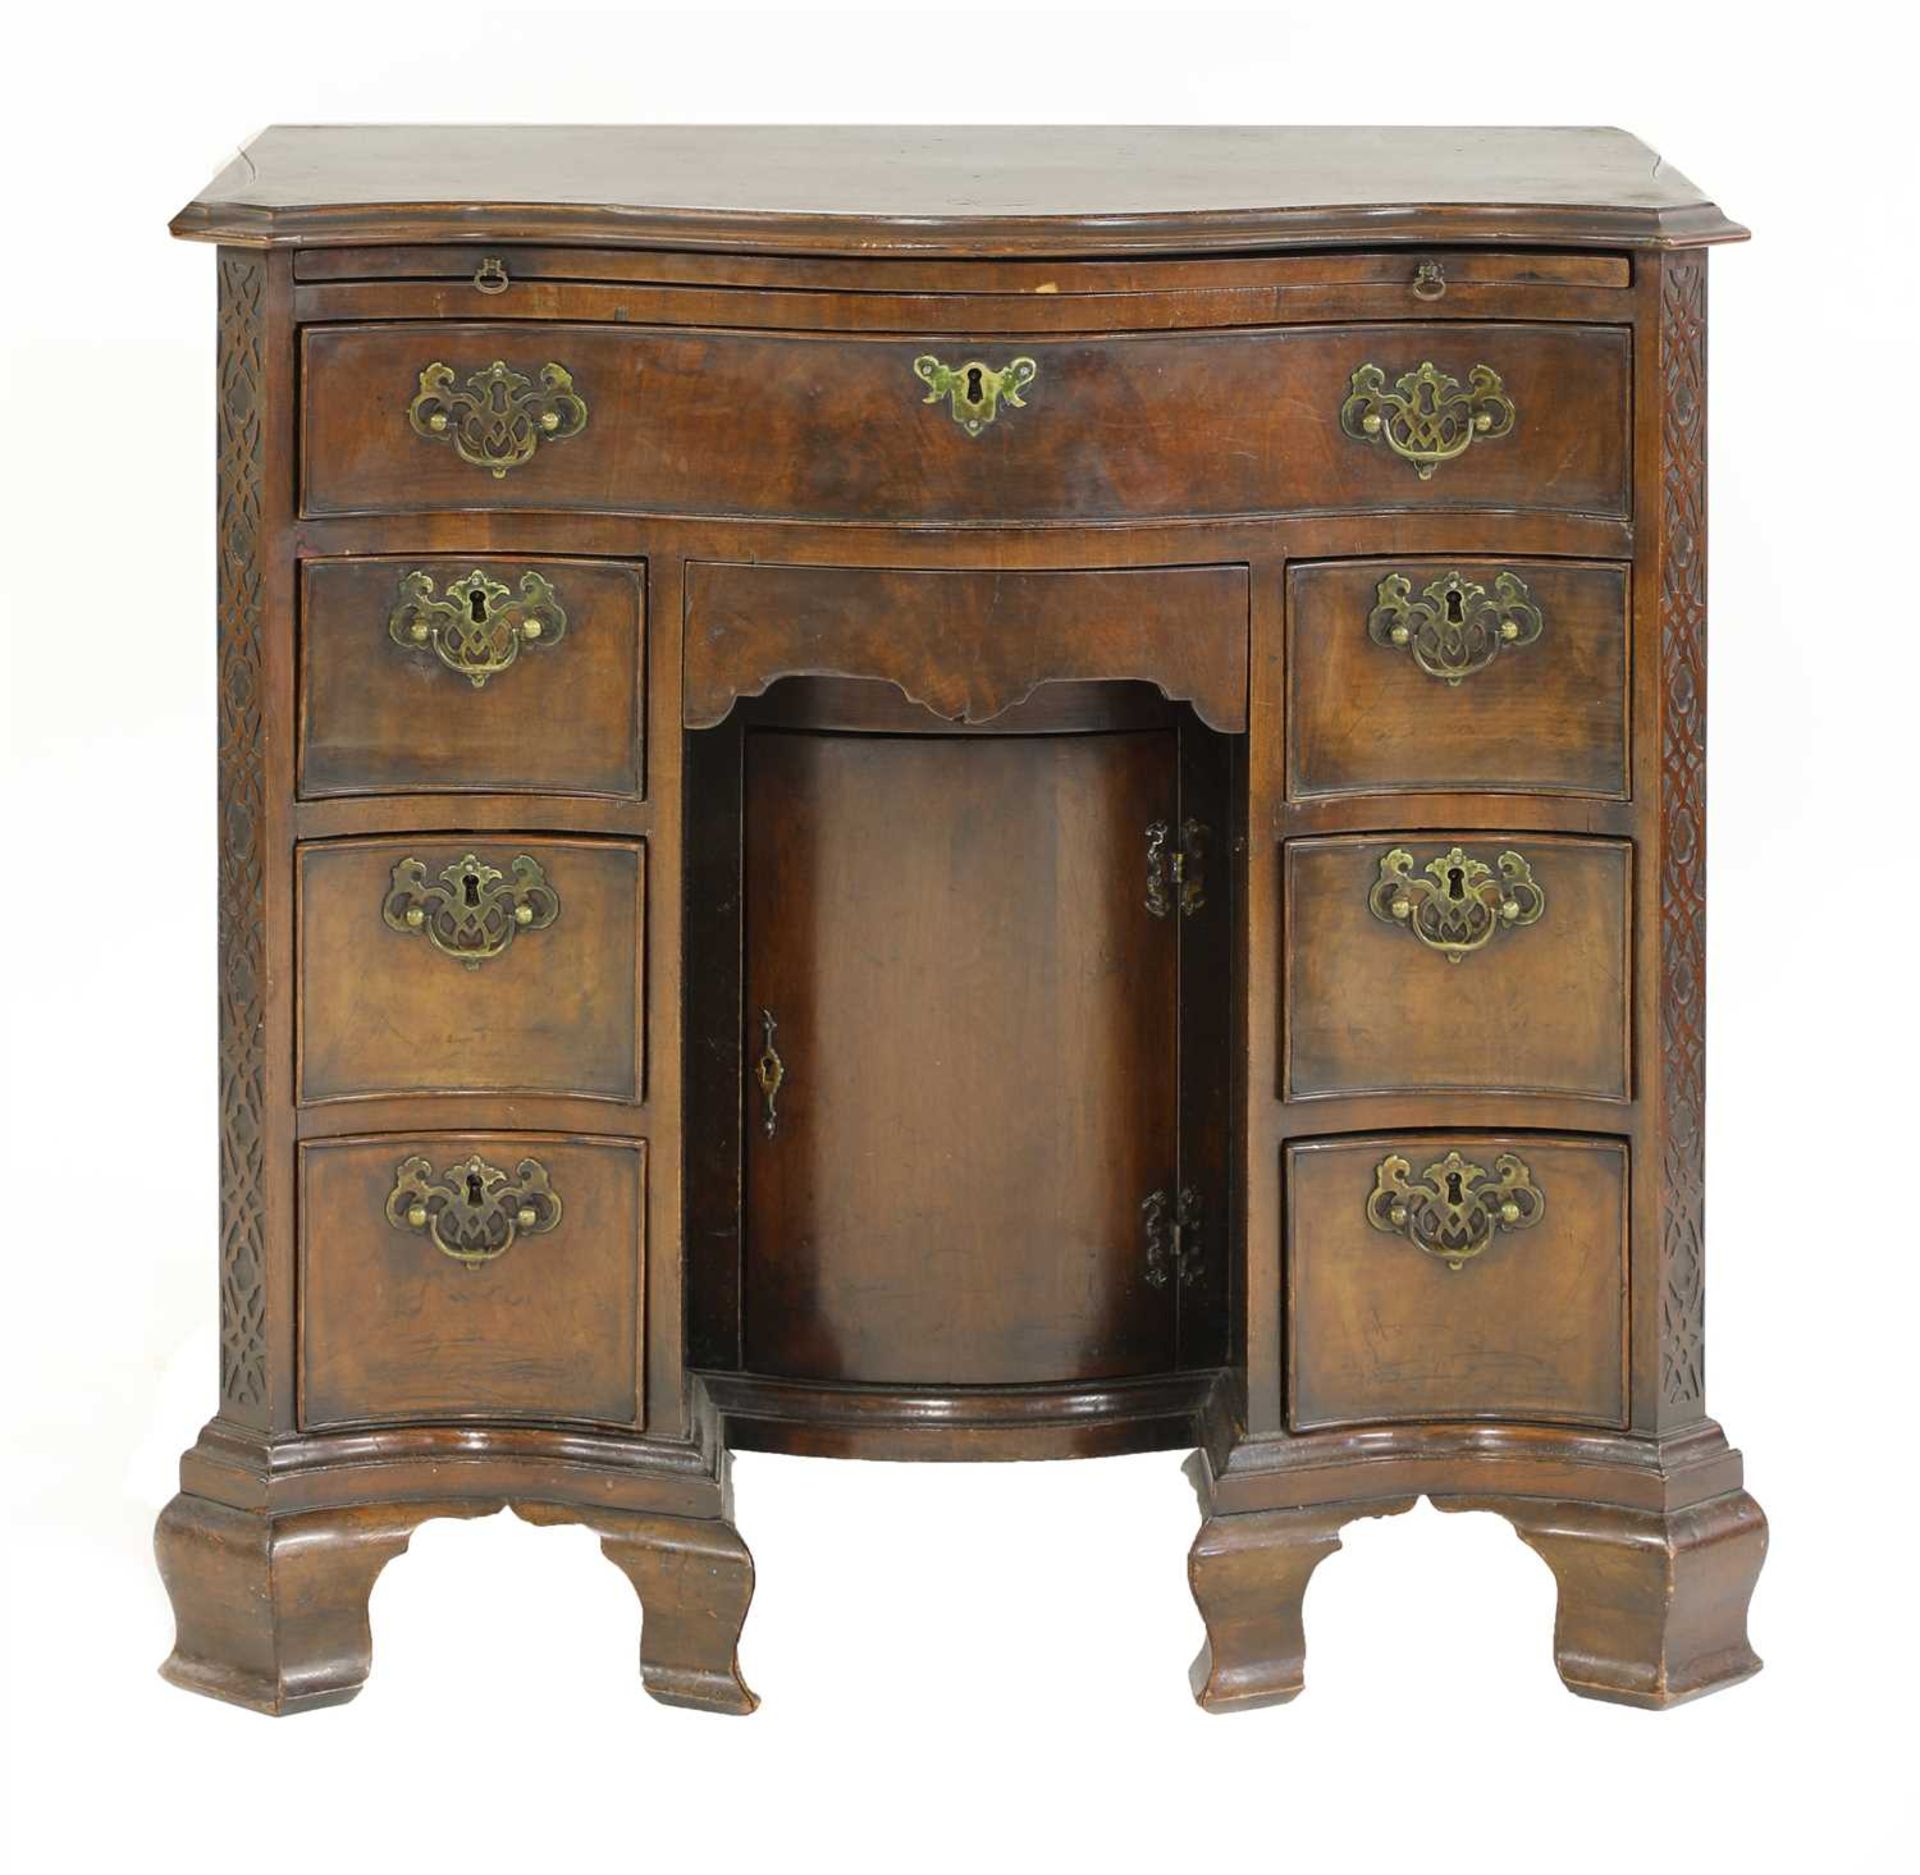 A George III-style mahogany kneehole desk,